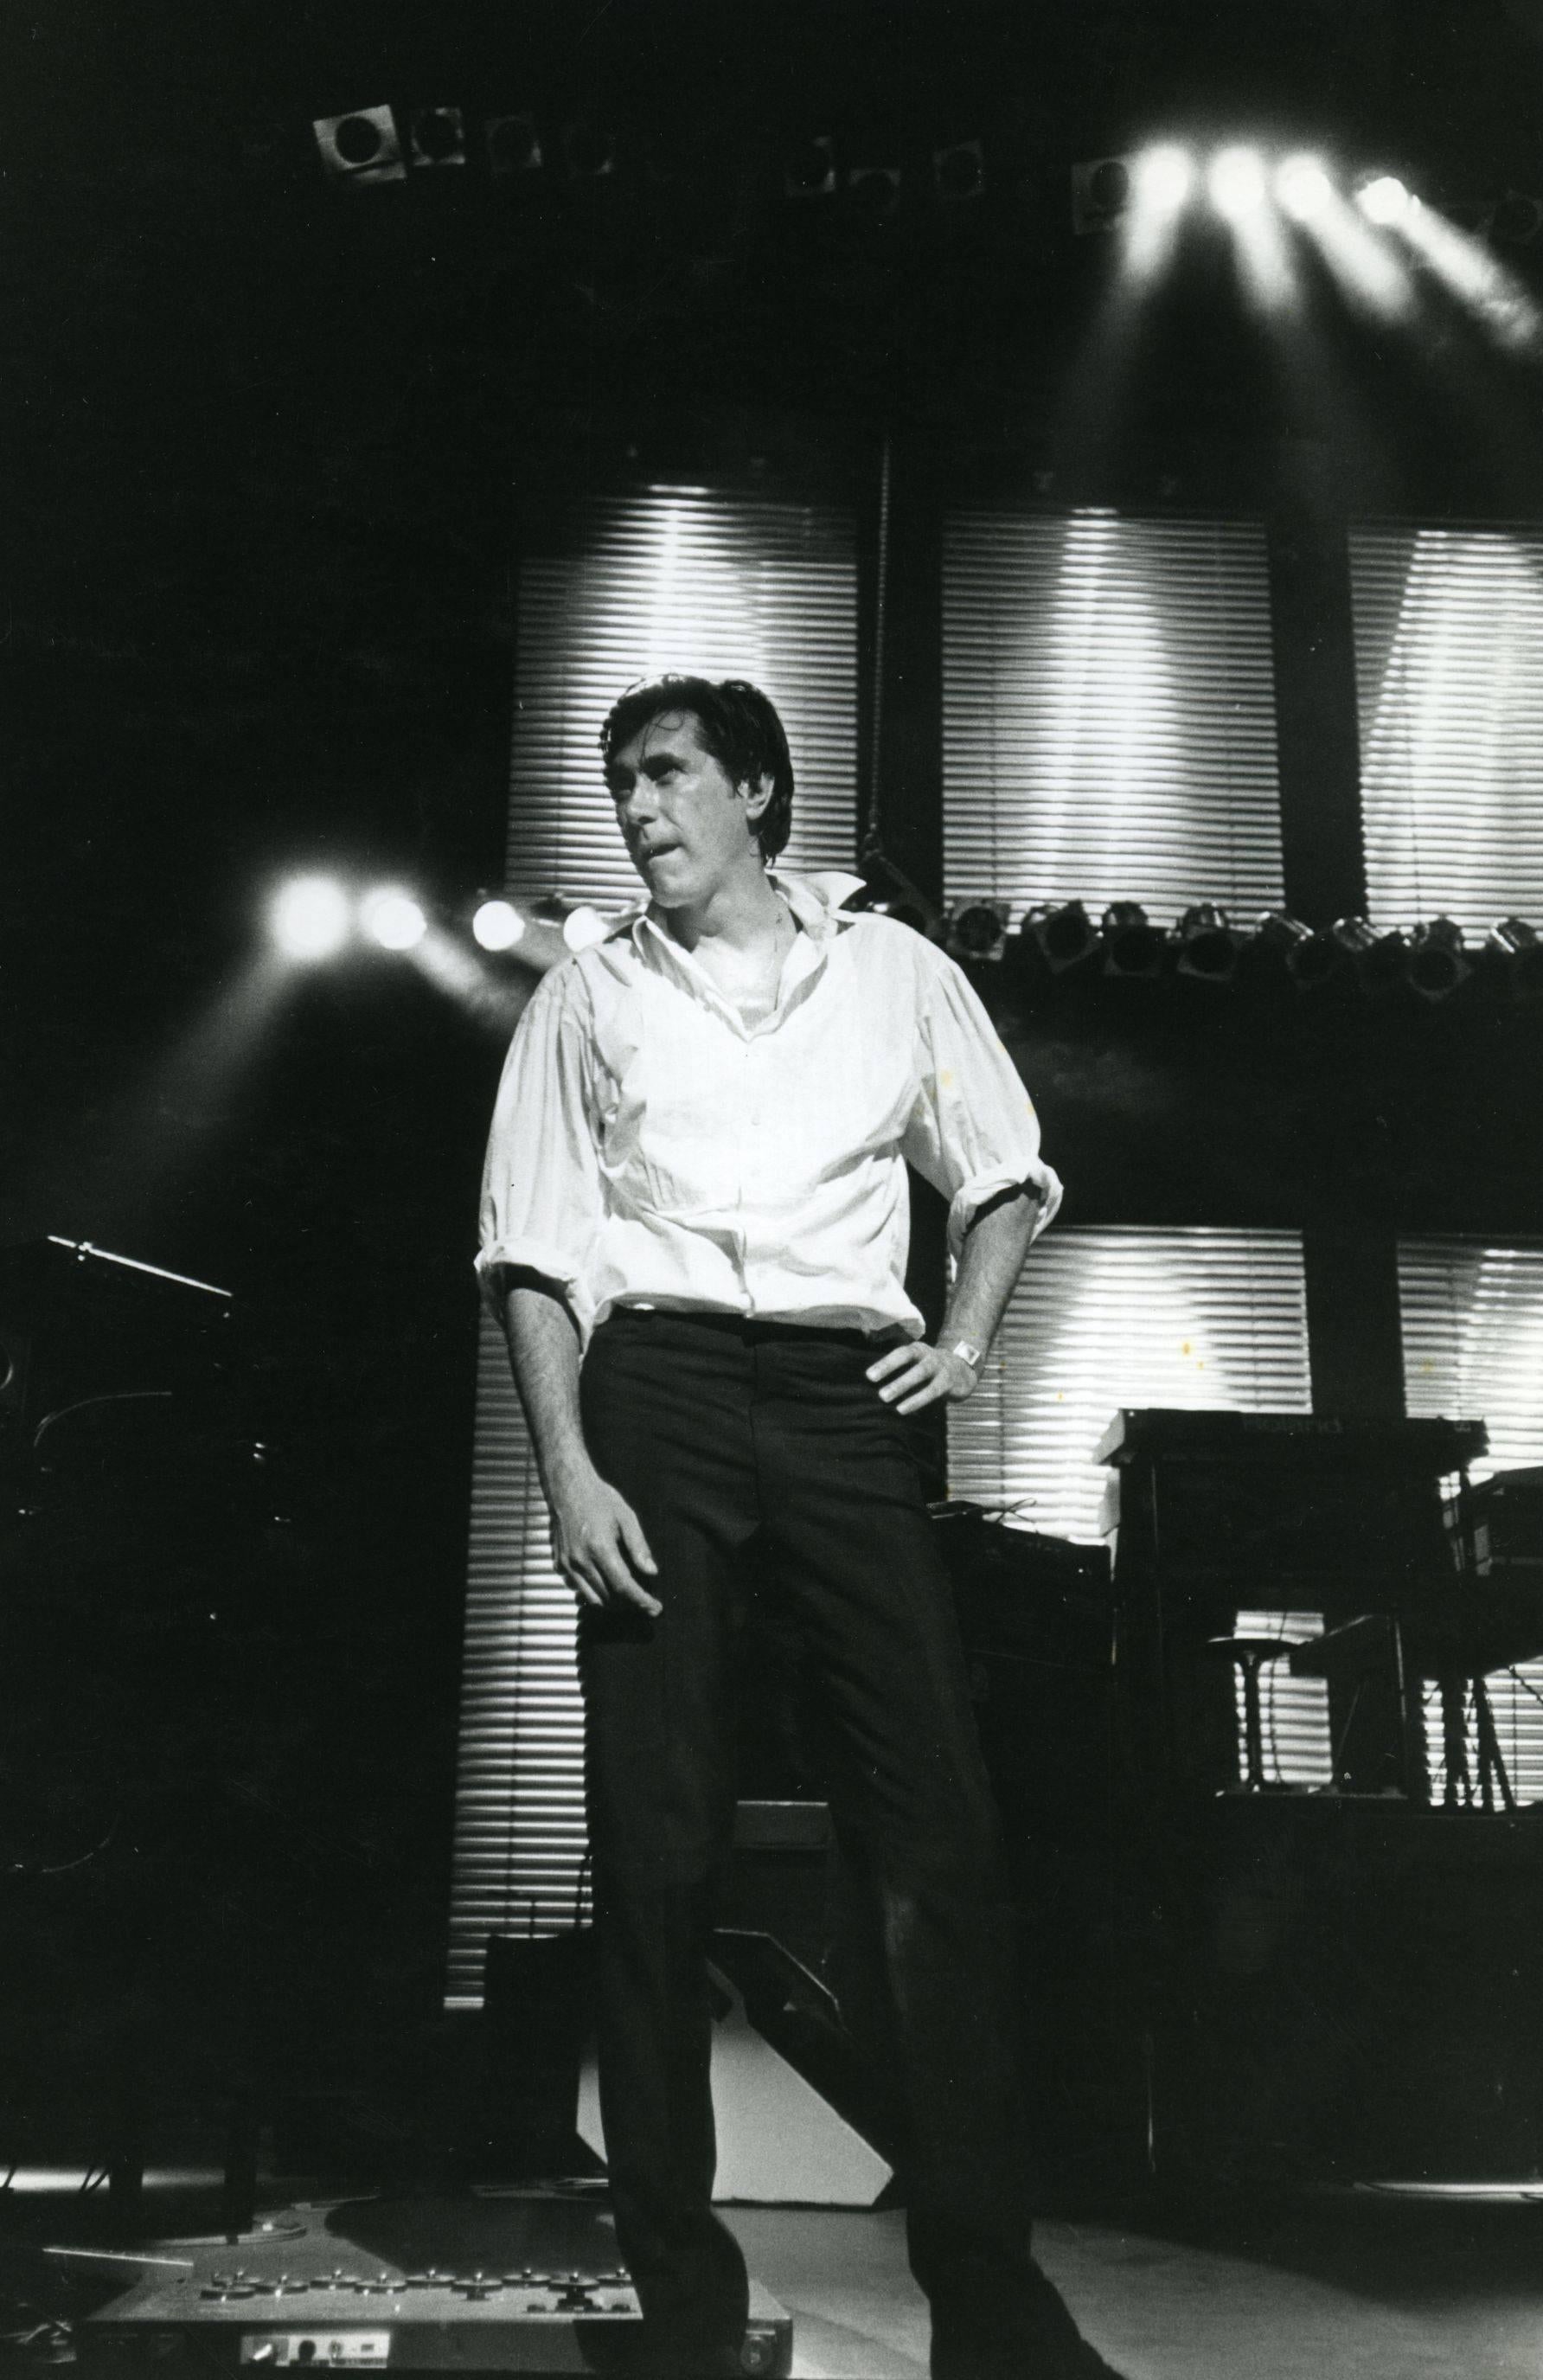 Unknown Portrait Photograph - Bryan Ferry Live in Concert Vintage Original Photograph